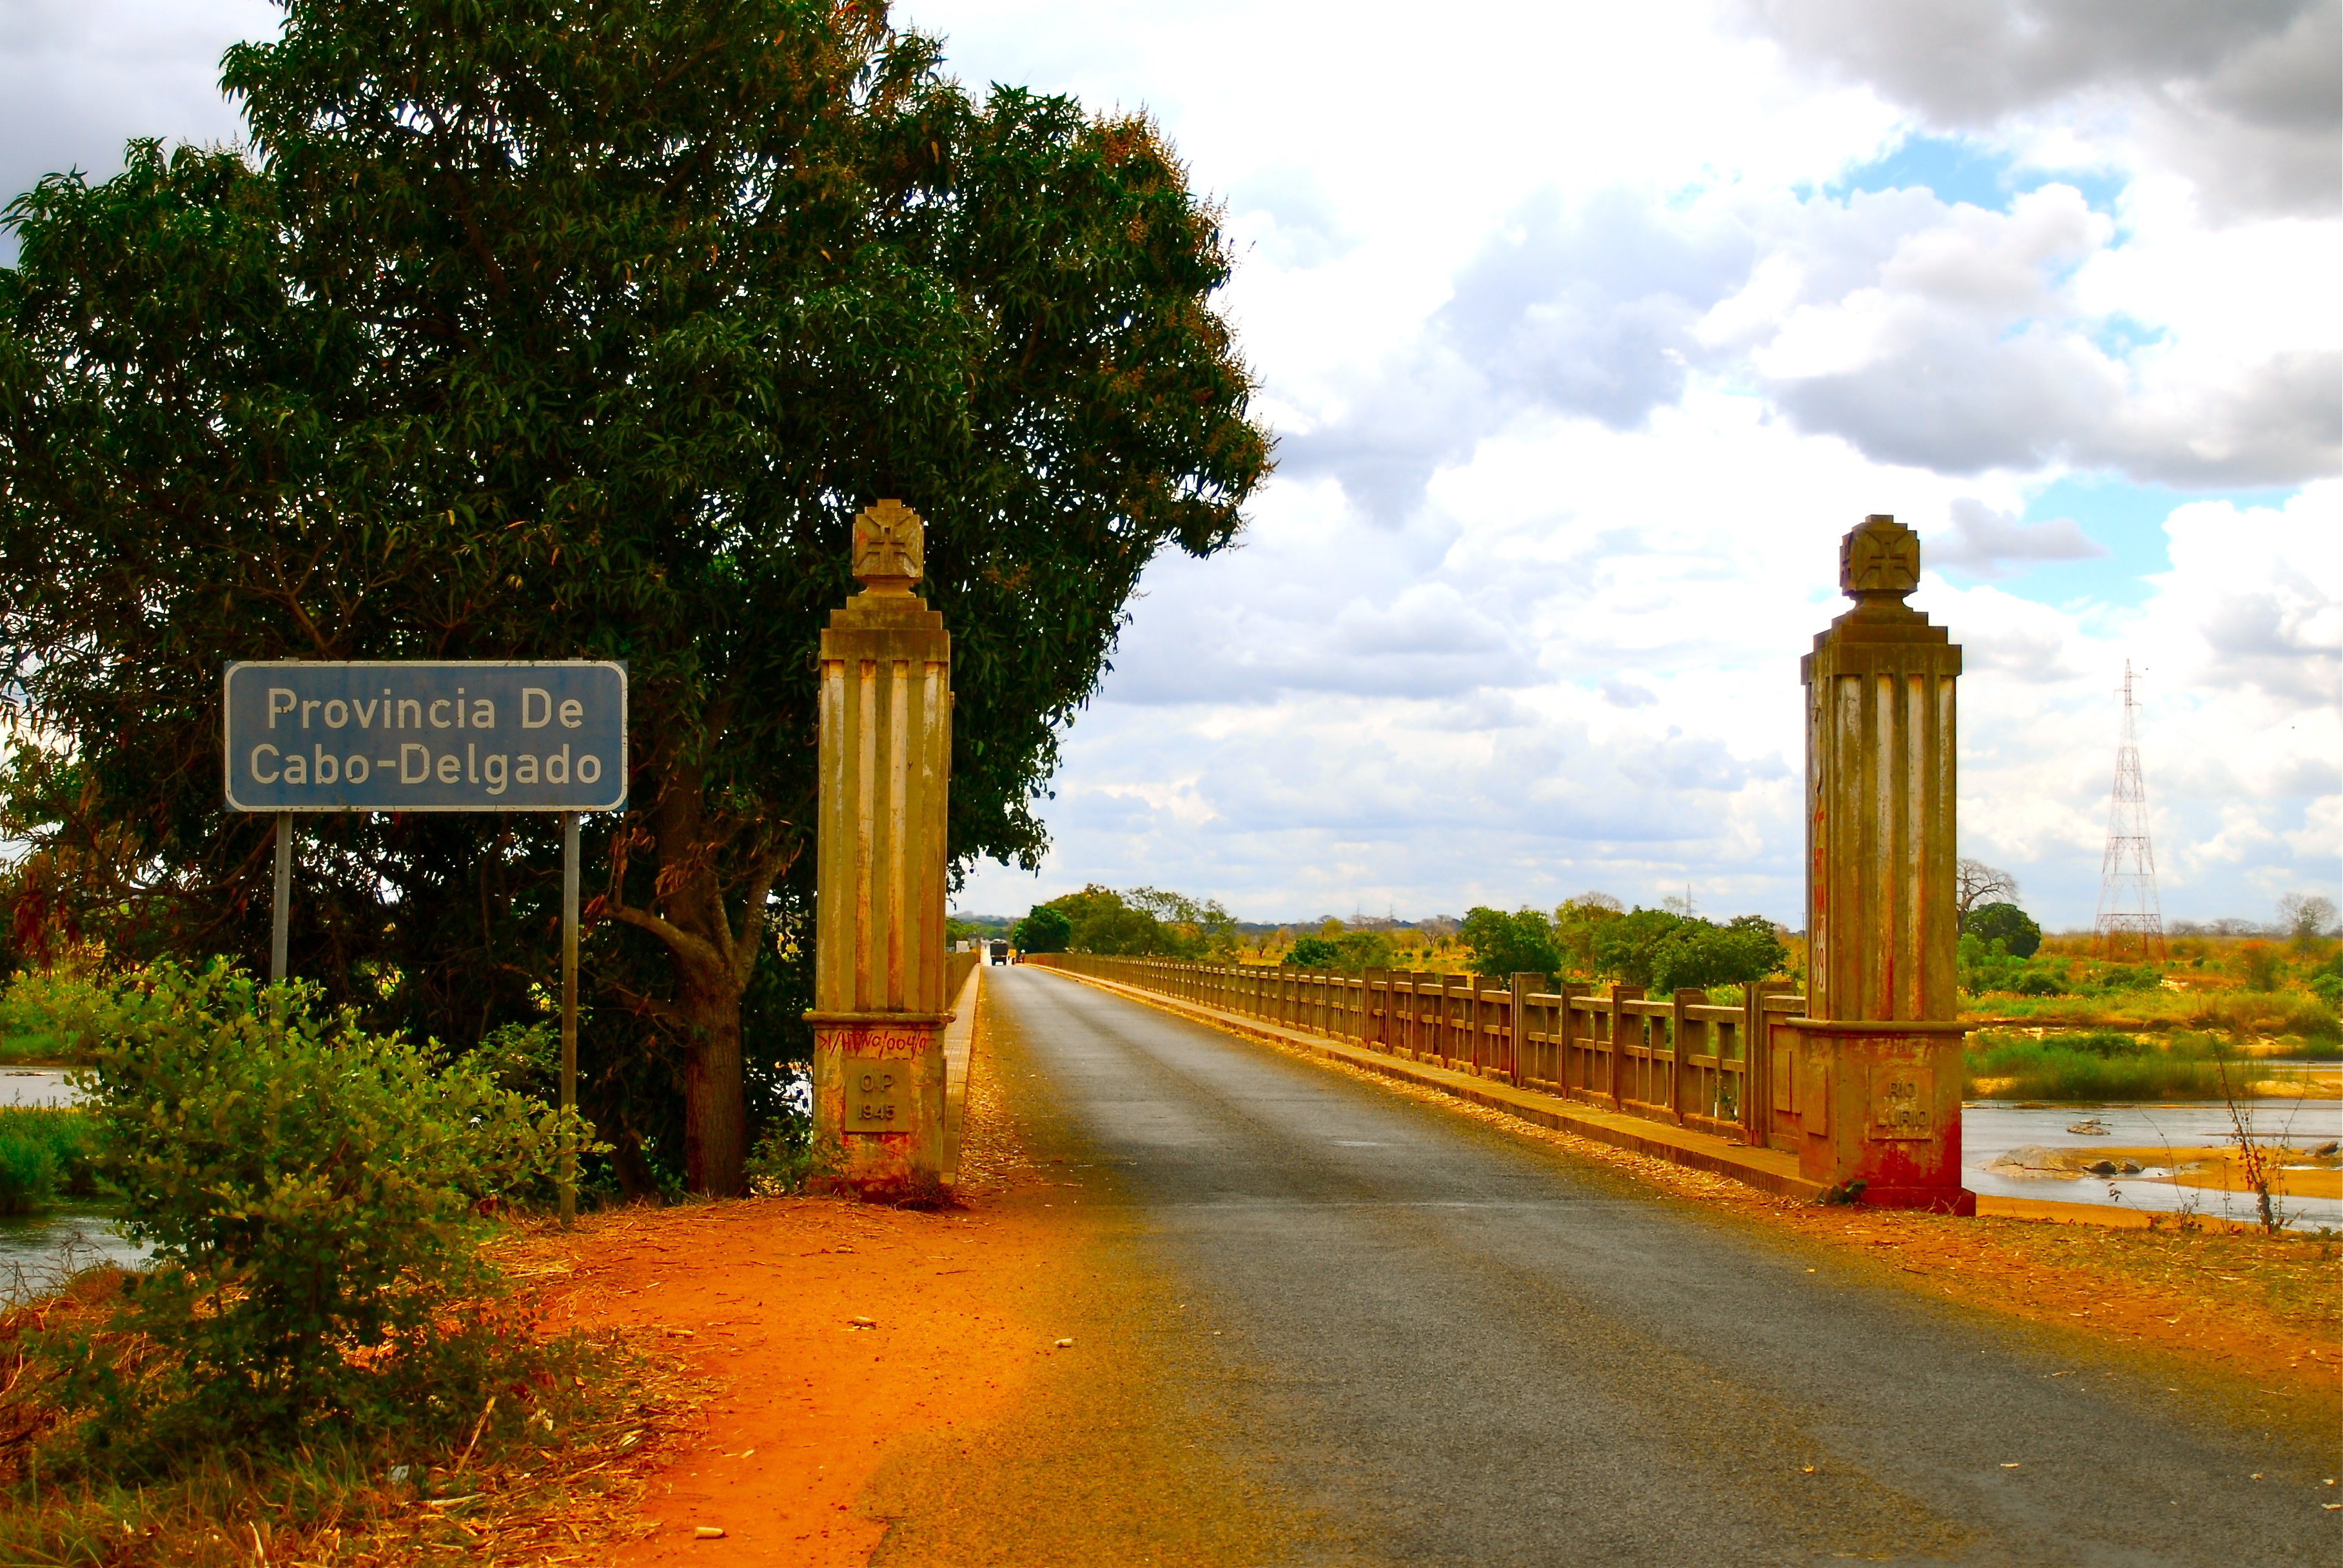 Die Brücke, die den Eingang zur Provinz Cabo Delgado markiert, ist durch zwei Steinpfeiler auf beiden Seiten der Straße gekennzeichnet.